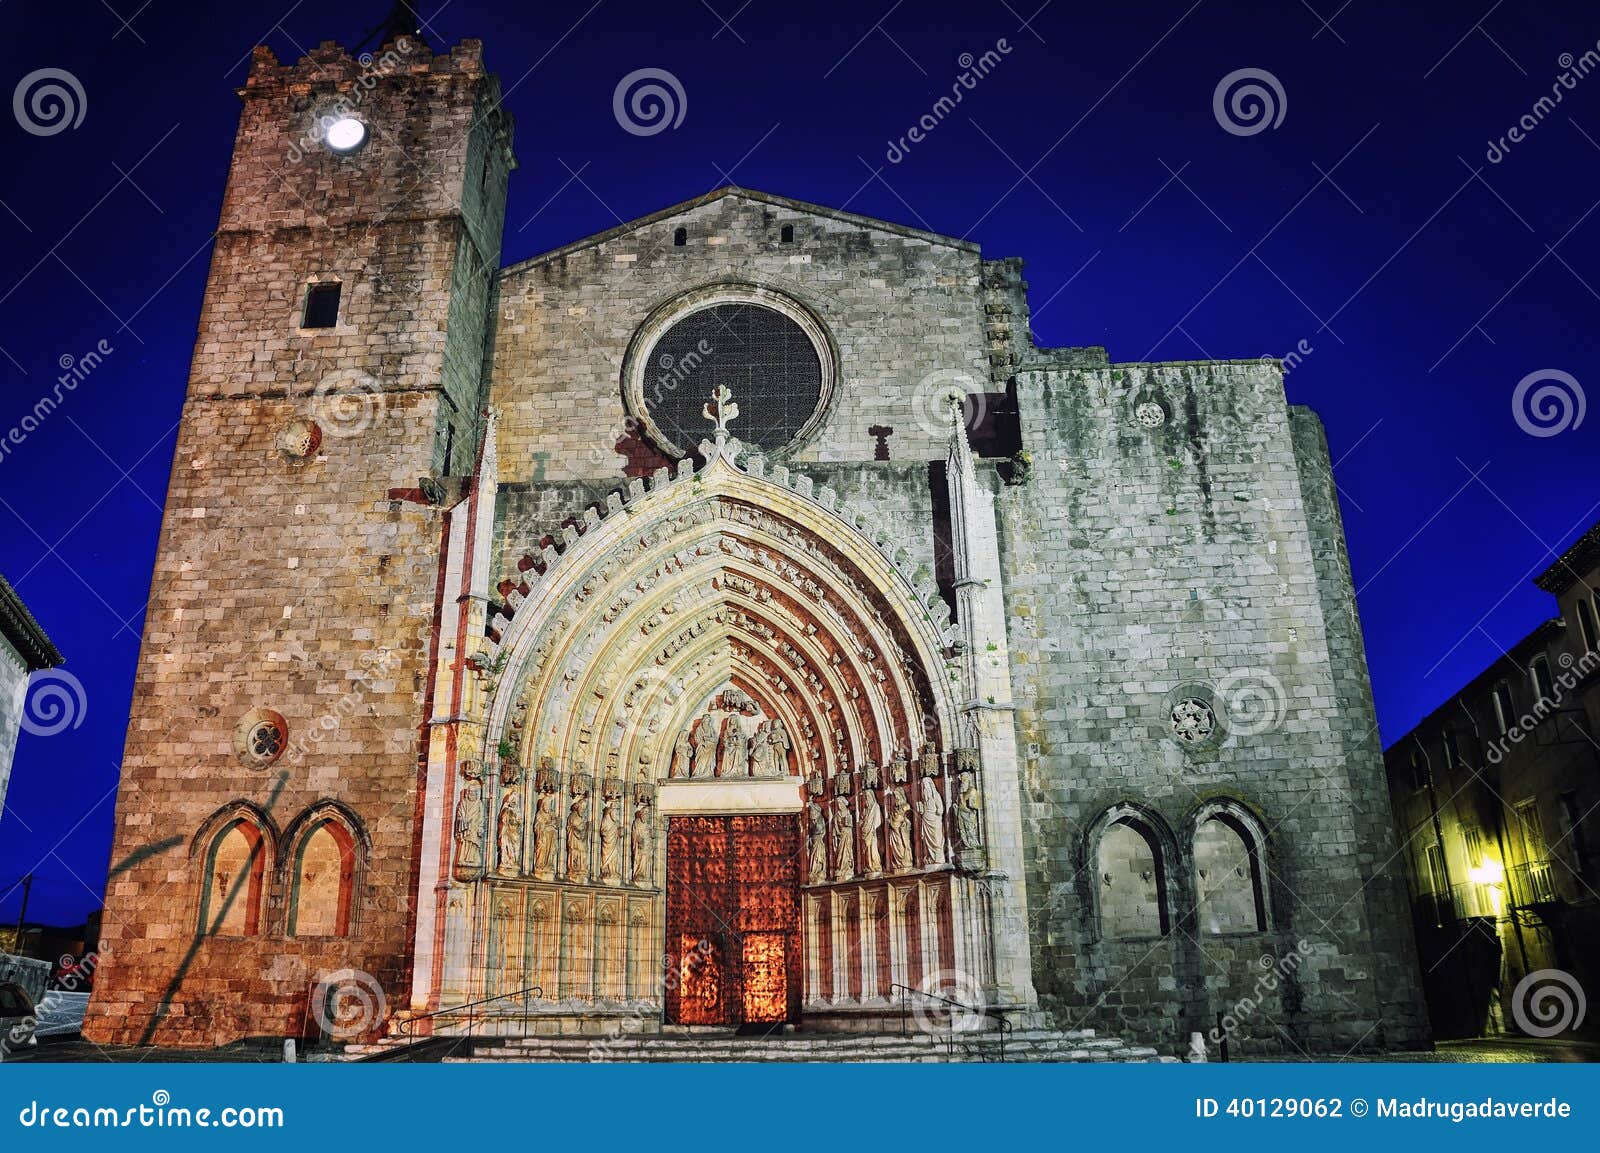 basilica de santa maria de castellon de ampurias in girona, spain